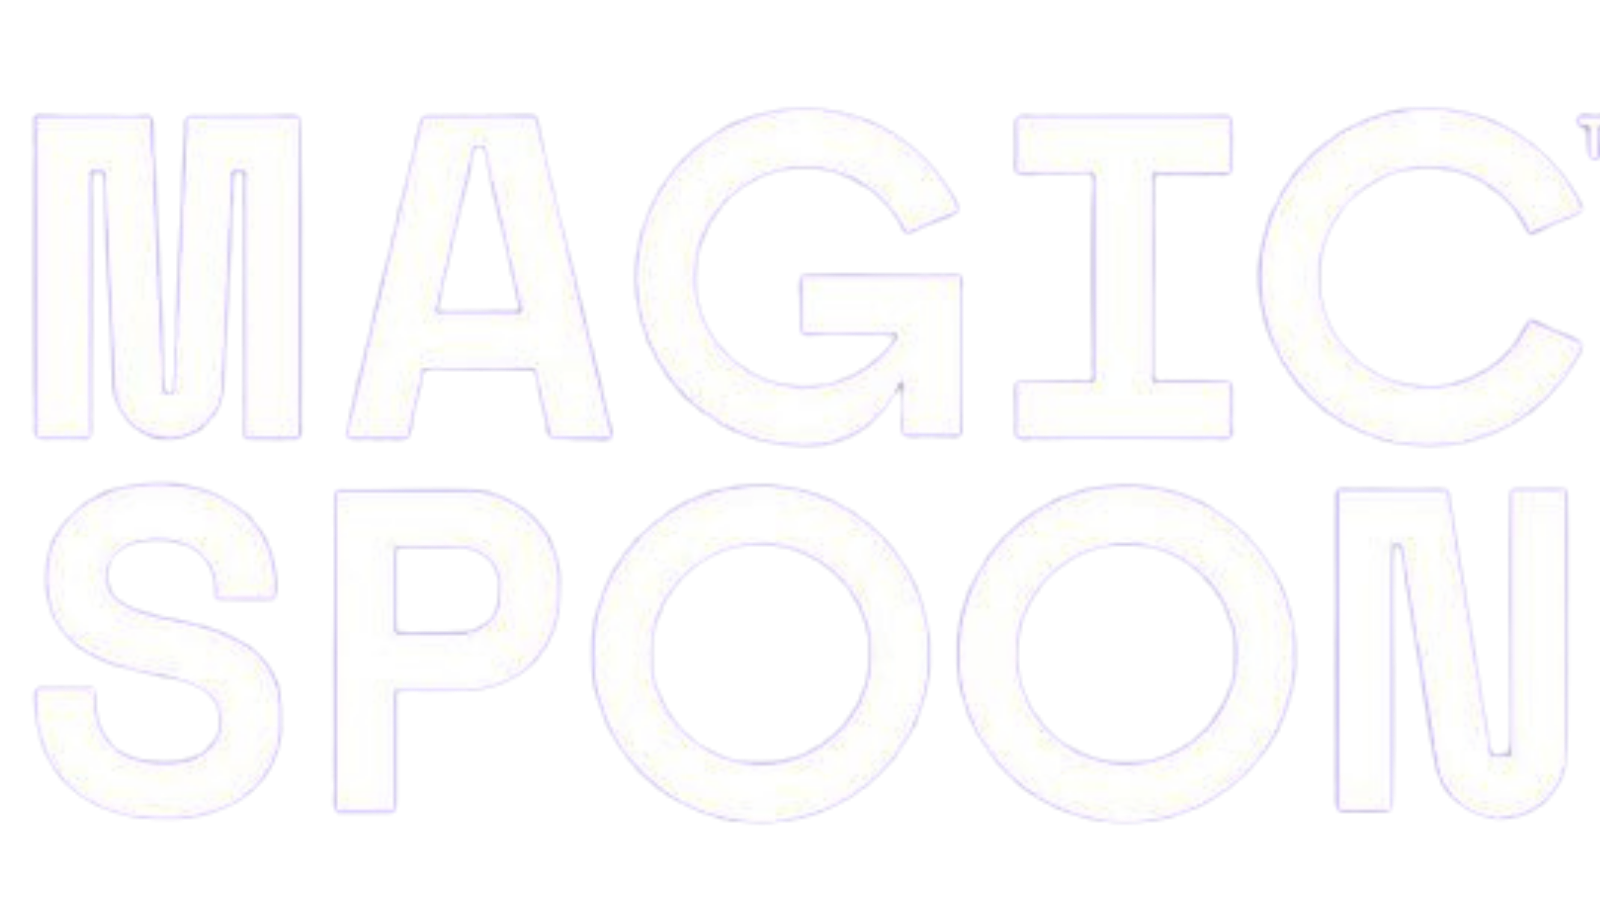 Magic spoon logo white